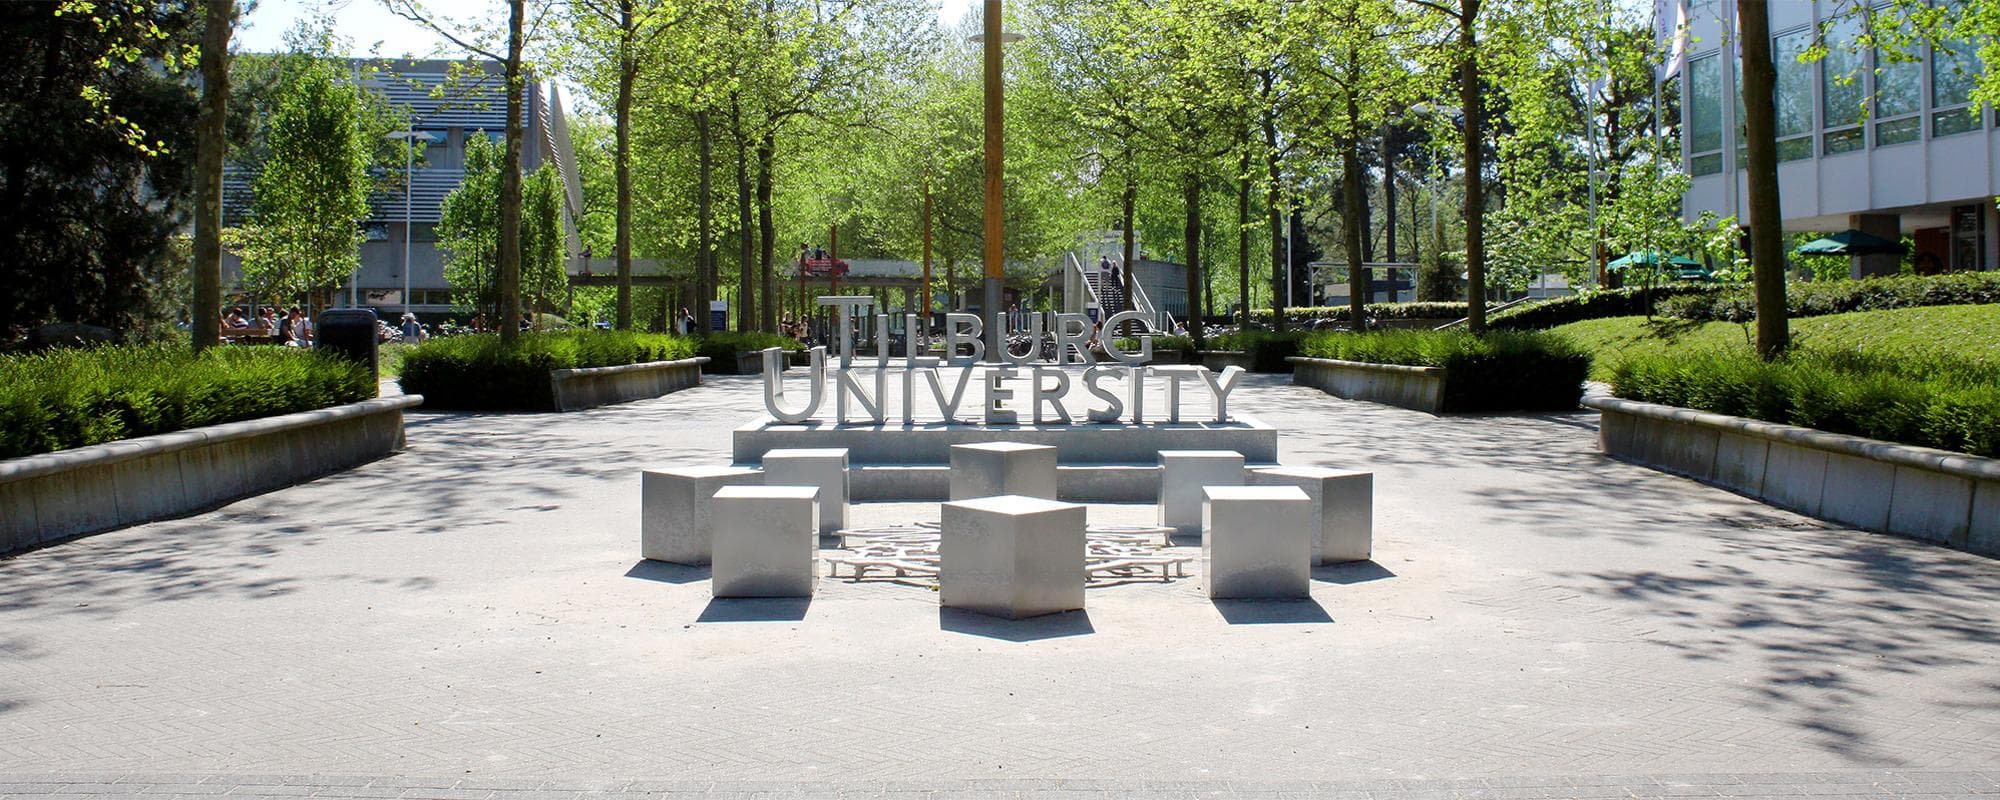 case-tilburg-university-header